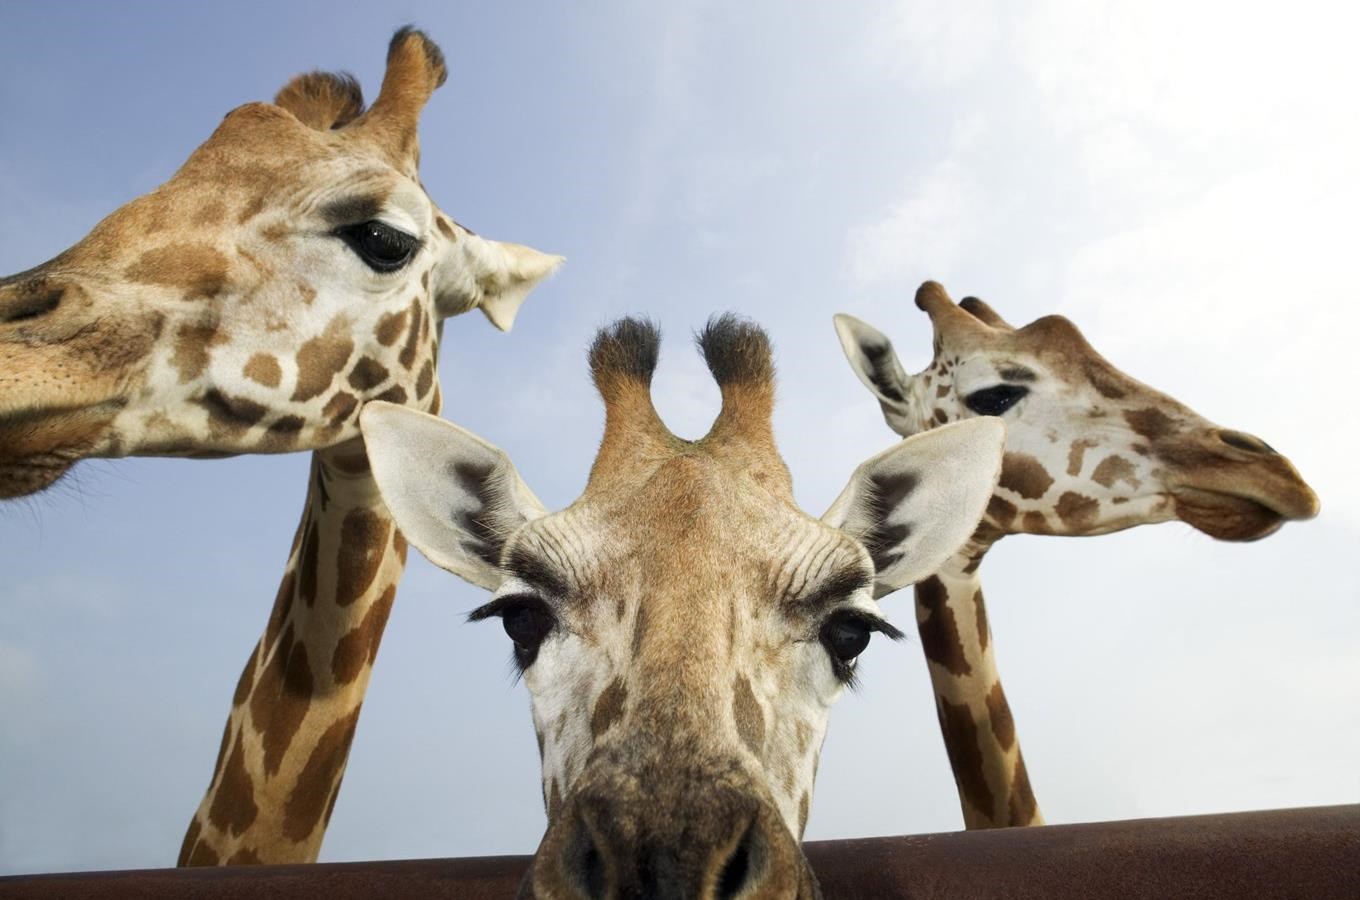 Jihlavská zoo dnes poprvé představí africký pavilon a jeho nové obyvatele veřejnosti